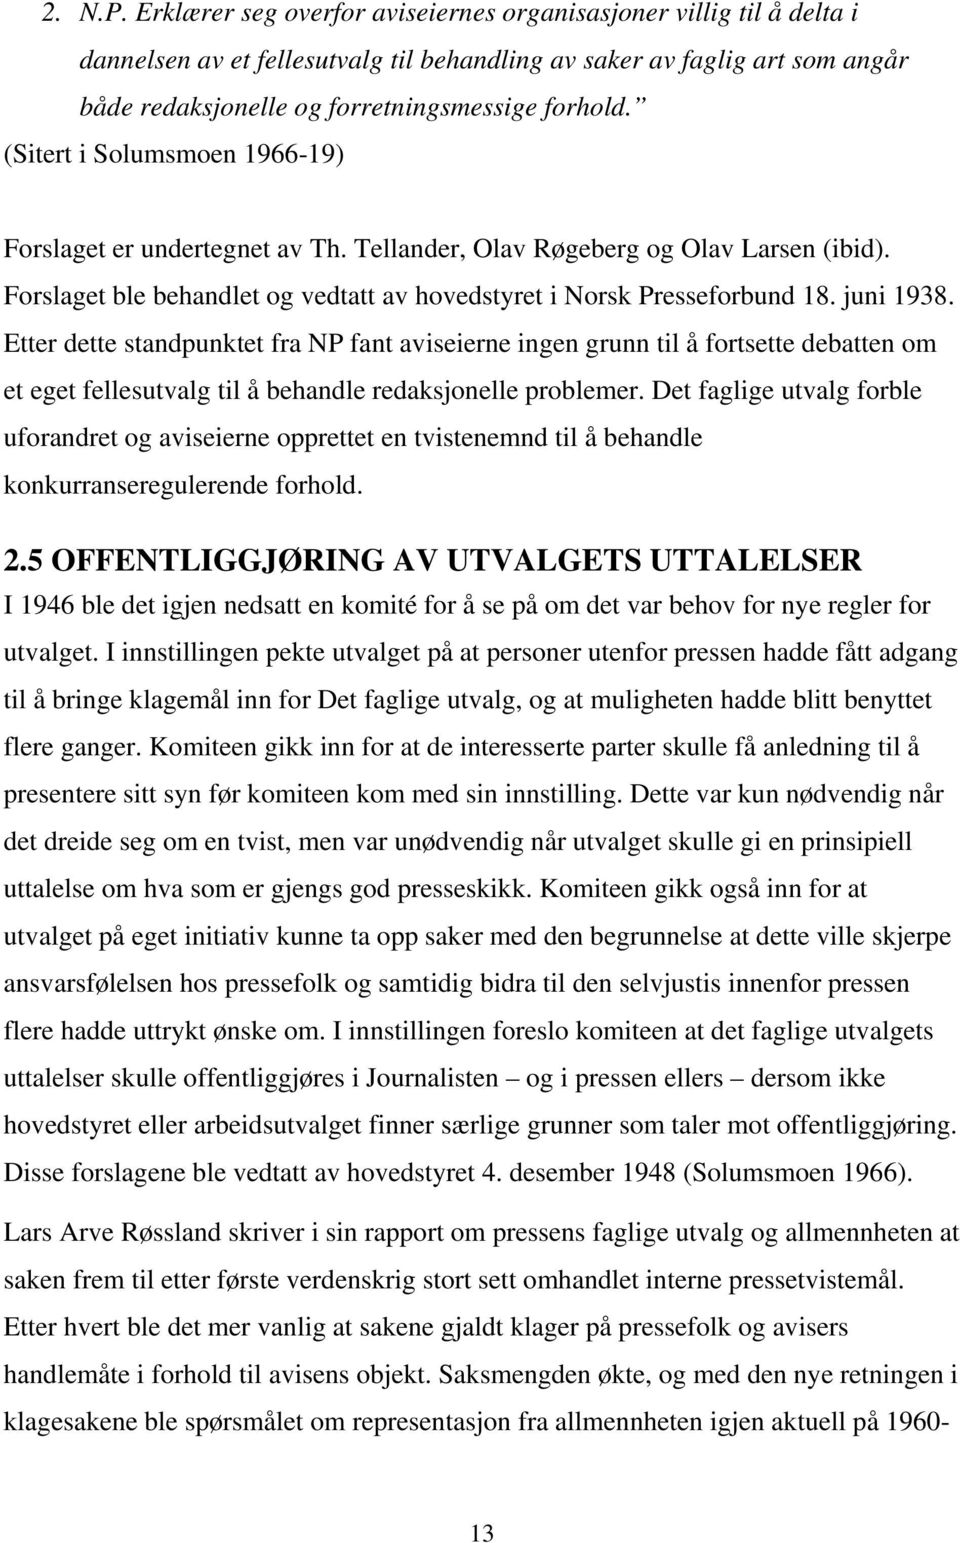 (Sitert i Solumsmoen 1966-19) Forslaget er undertegnet av Th. Tellander, Olav Røgeberg og Olav Larsen (ibid). Forslaget ble behandlet og vedtatt av hovedstyret i Norsk Presseforbund 18. juni 1938.